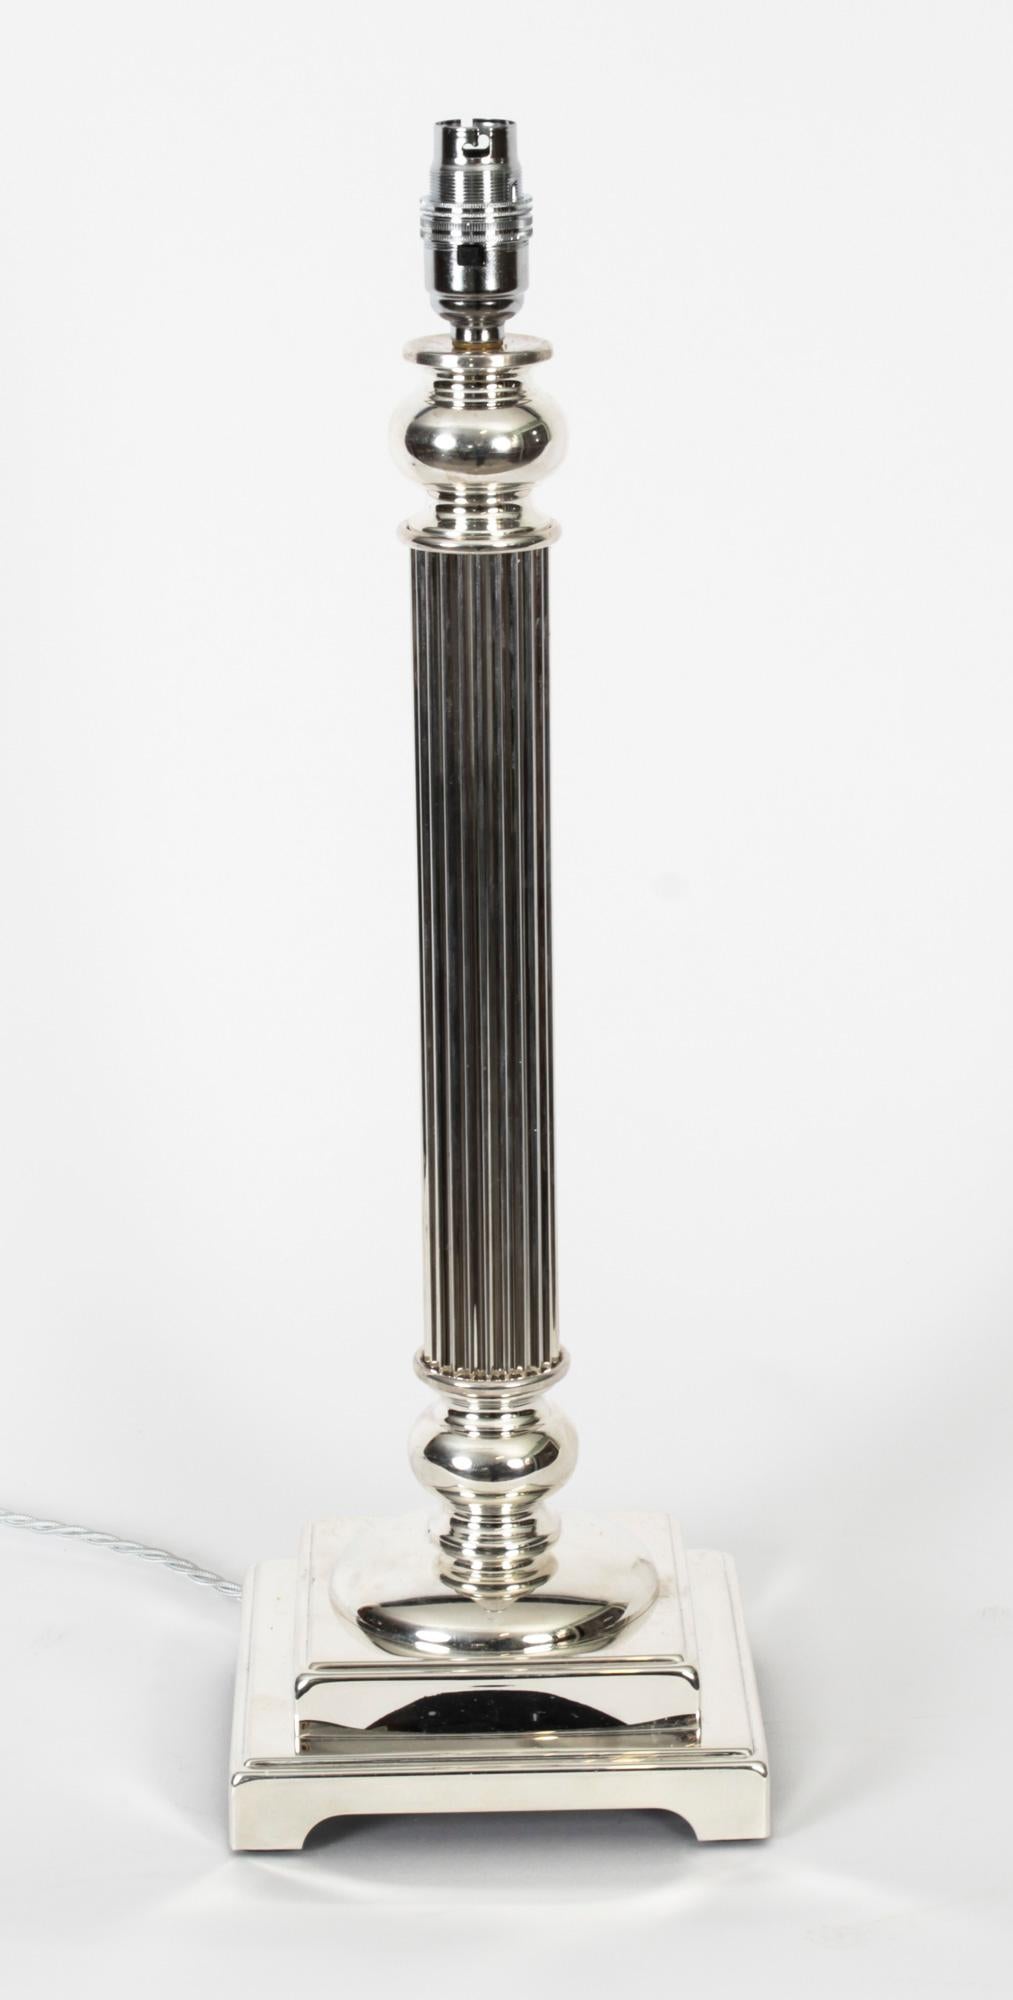 Il s'agit d'une impressionnante lampe de table à colonne dorique victorienne argentée, datant d'environ 1890 et convertie plus tard à l'électricité.
 
Il présente un chapiteau dorique classique décoré d'une tige cylindrique cannelée sur une base